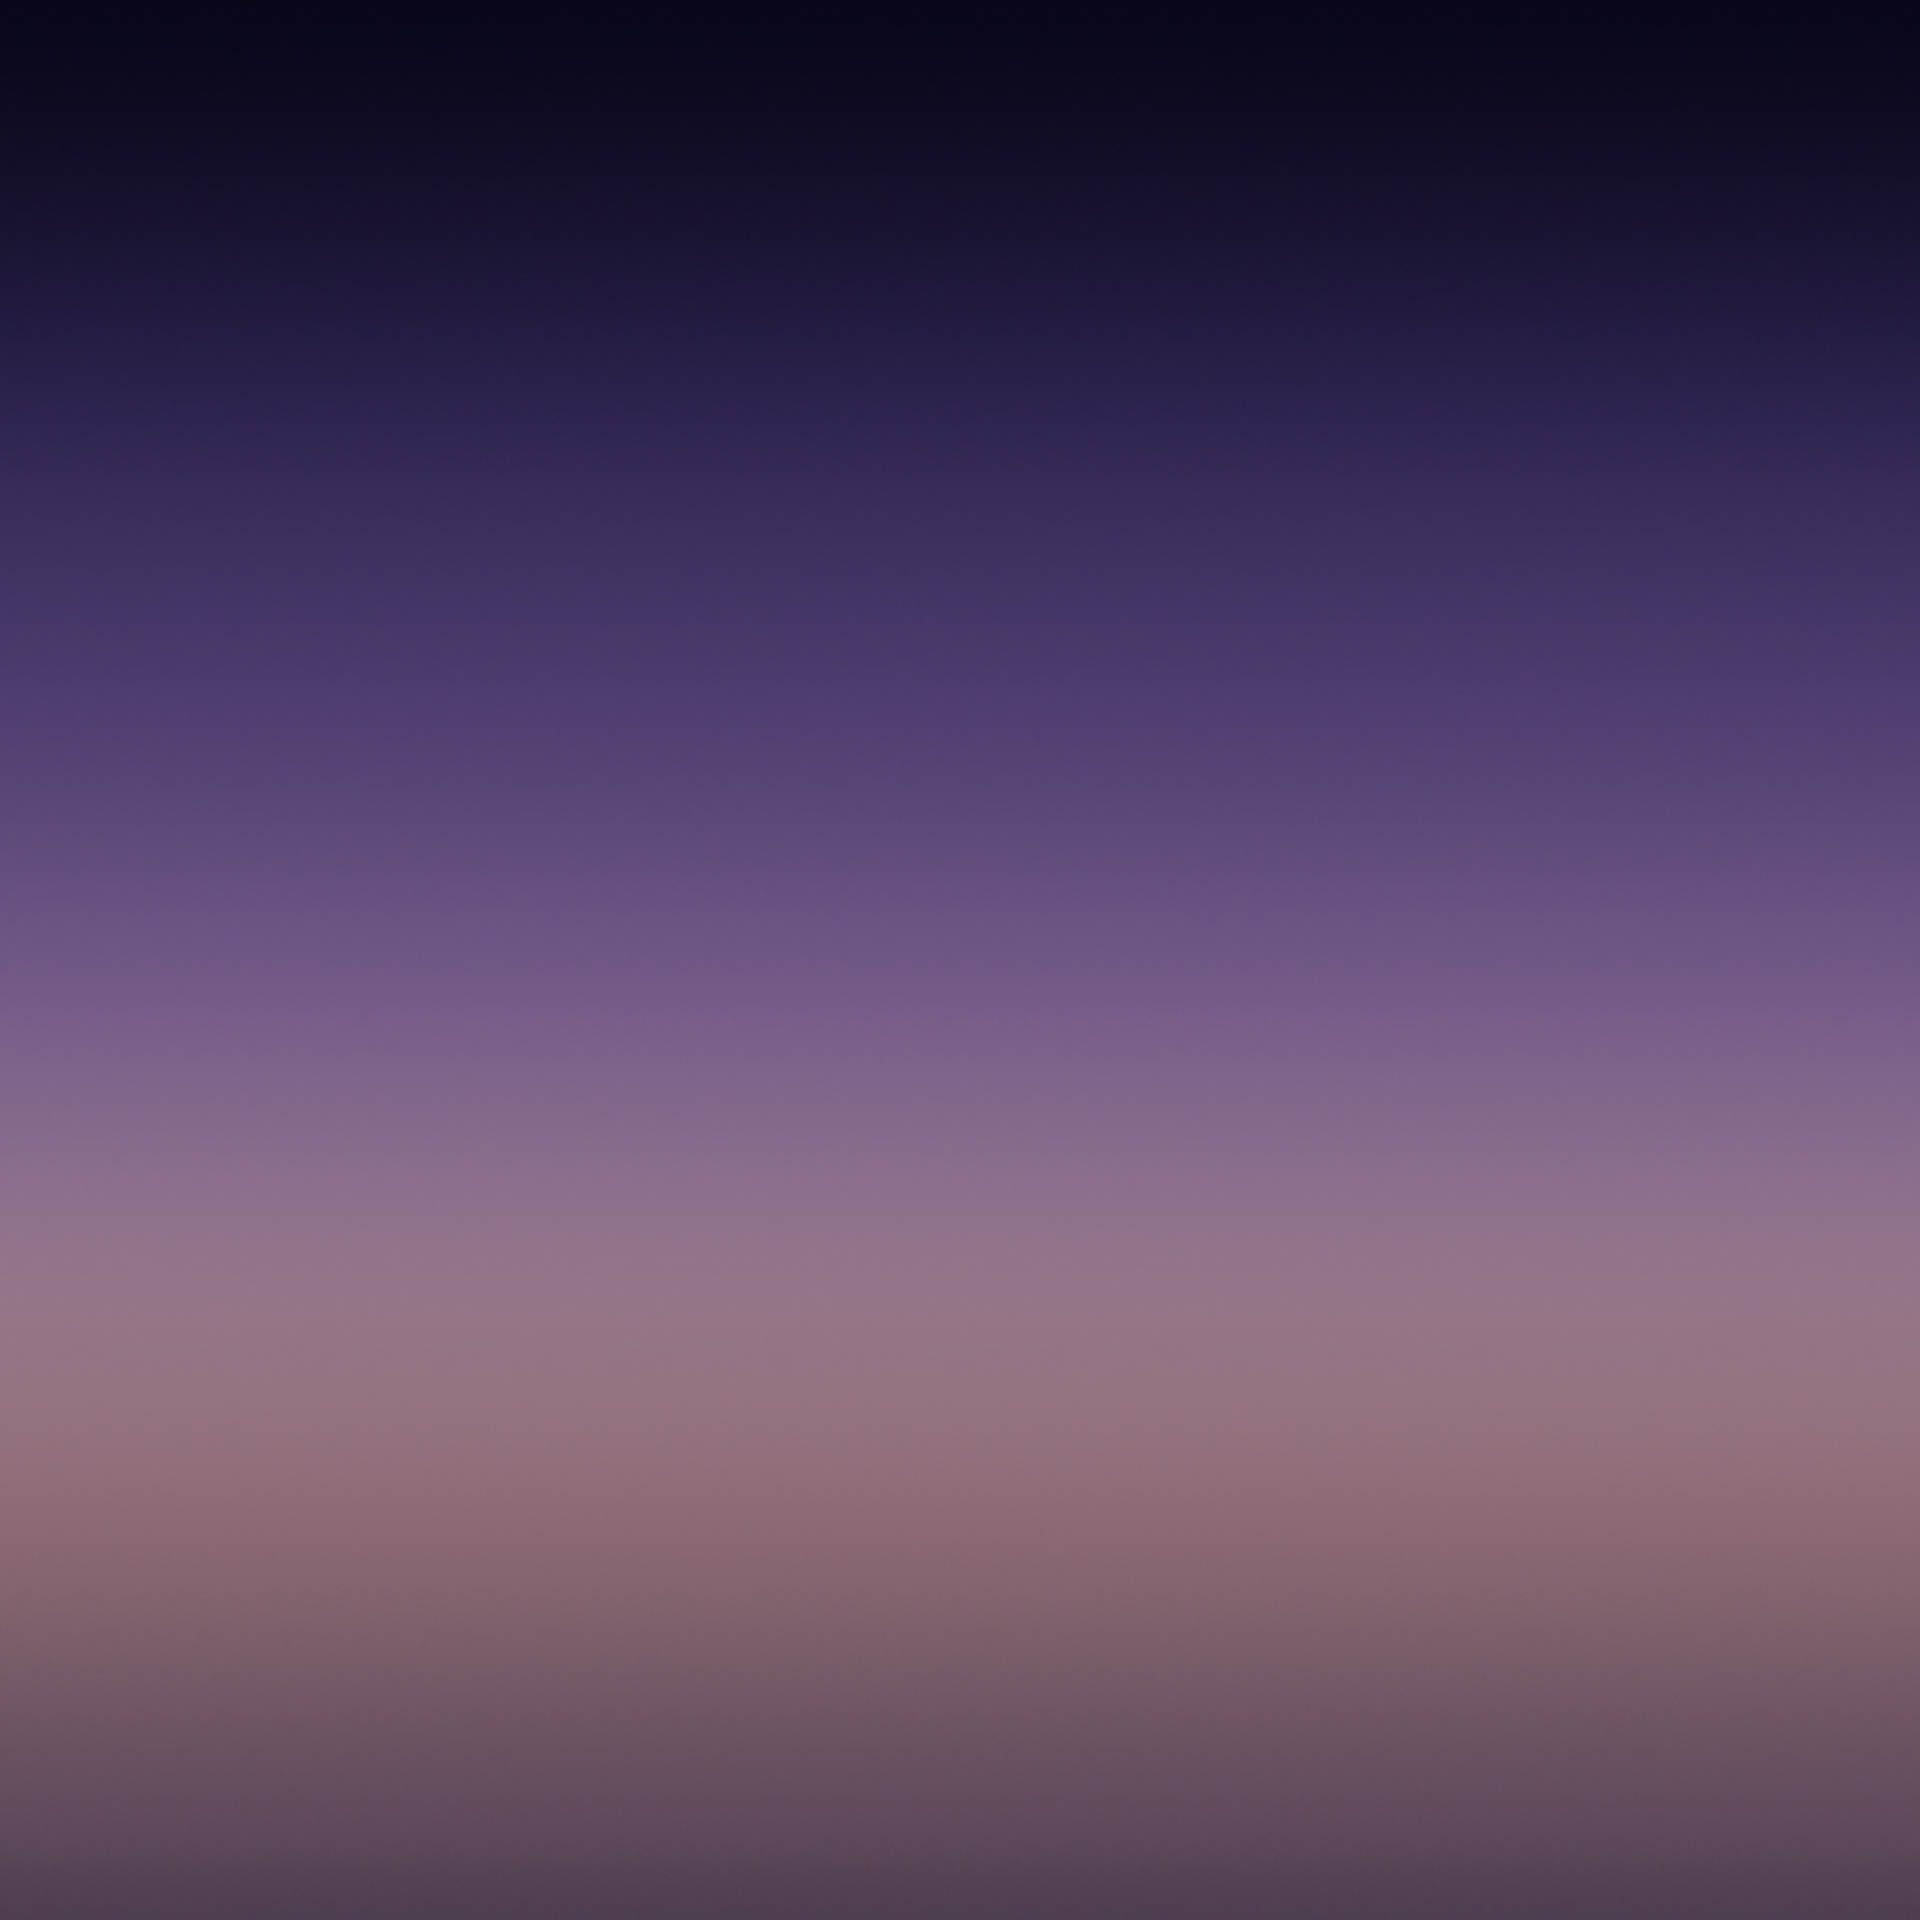 Note 8 Purple Gradient Background